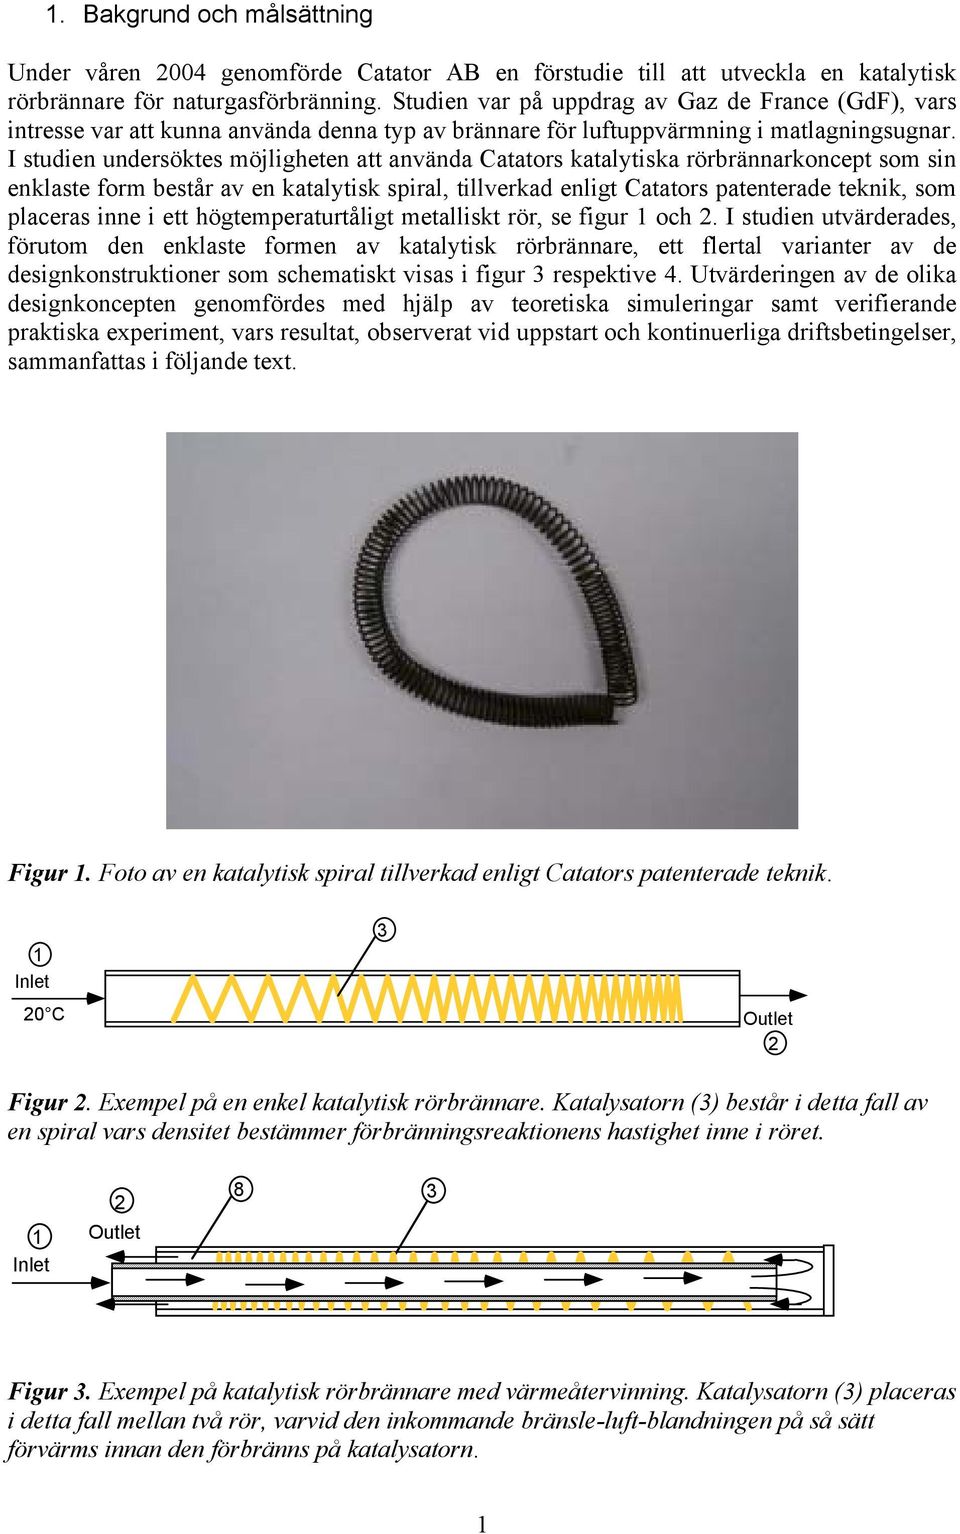 I studien undersöktes möjligheten att använda Catators katalytiska rörbrännarkoncept som sin enklaste form består av en katalytisk spiral, tillverkad enligt Catators patenterade teknik, som placeras